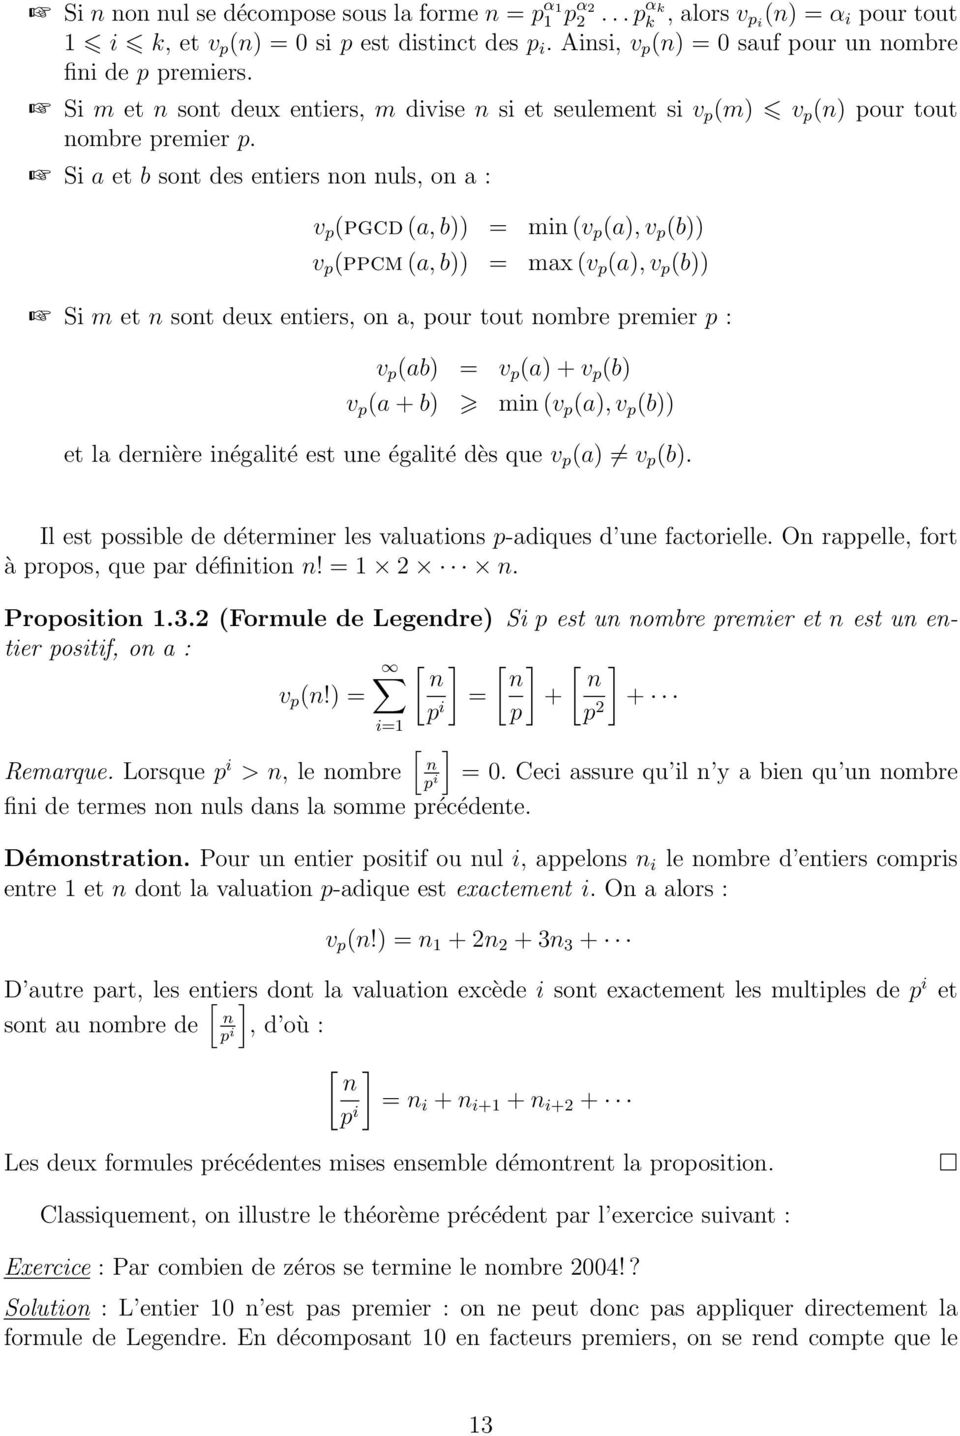 Si a et b sont des entiers non nuls, on a : v p (pgcd (a, b)) = min (v p (a), v p (b)) v p (ppcm (a, b)) = max (v p (a), v p (b)) Si m et n sont deux entiers, on a, pour tout nombre premier p : v p